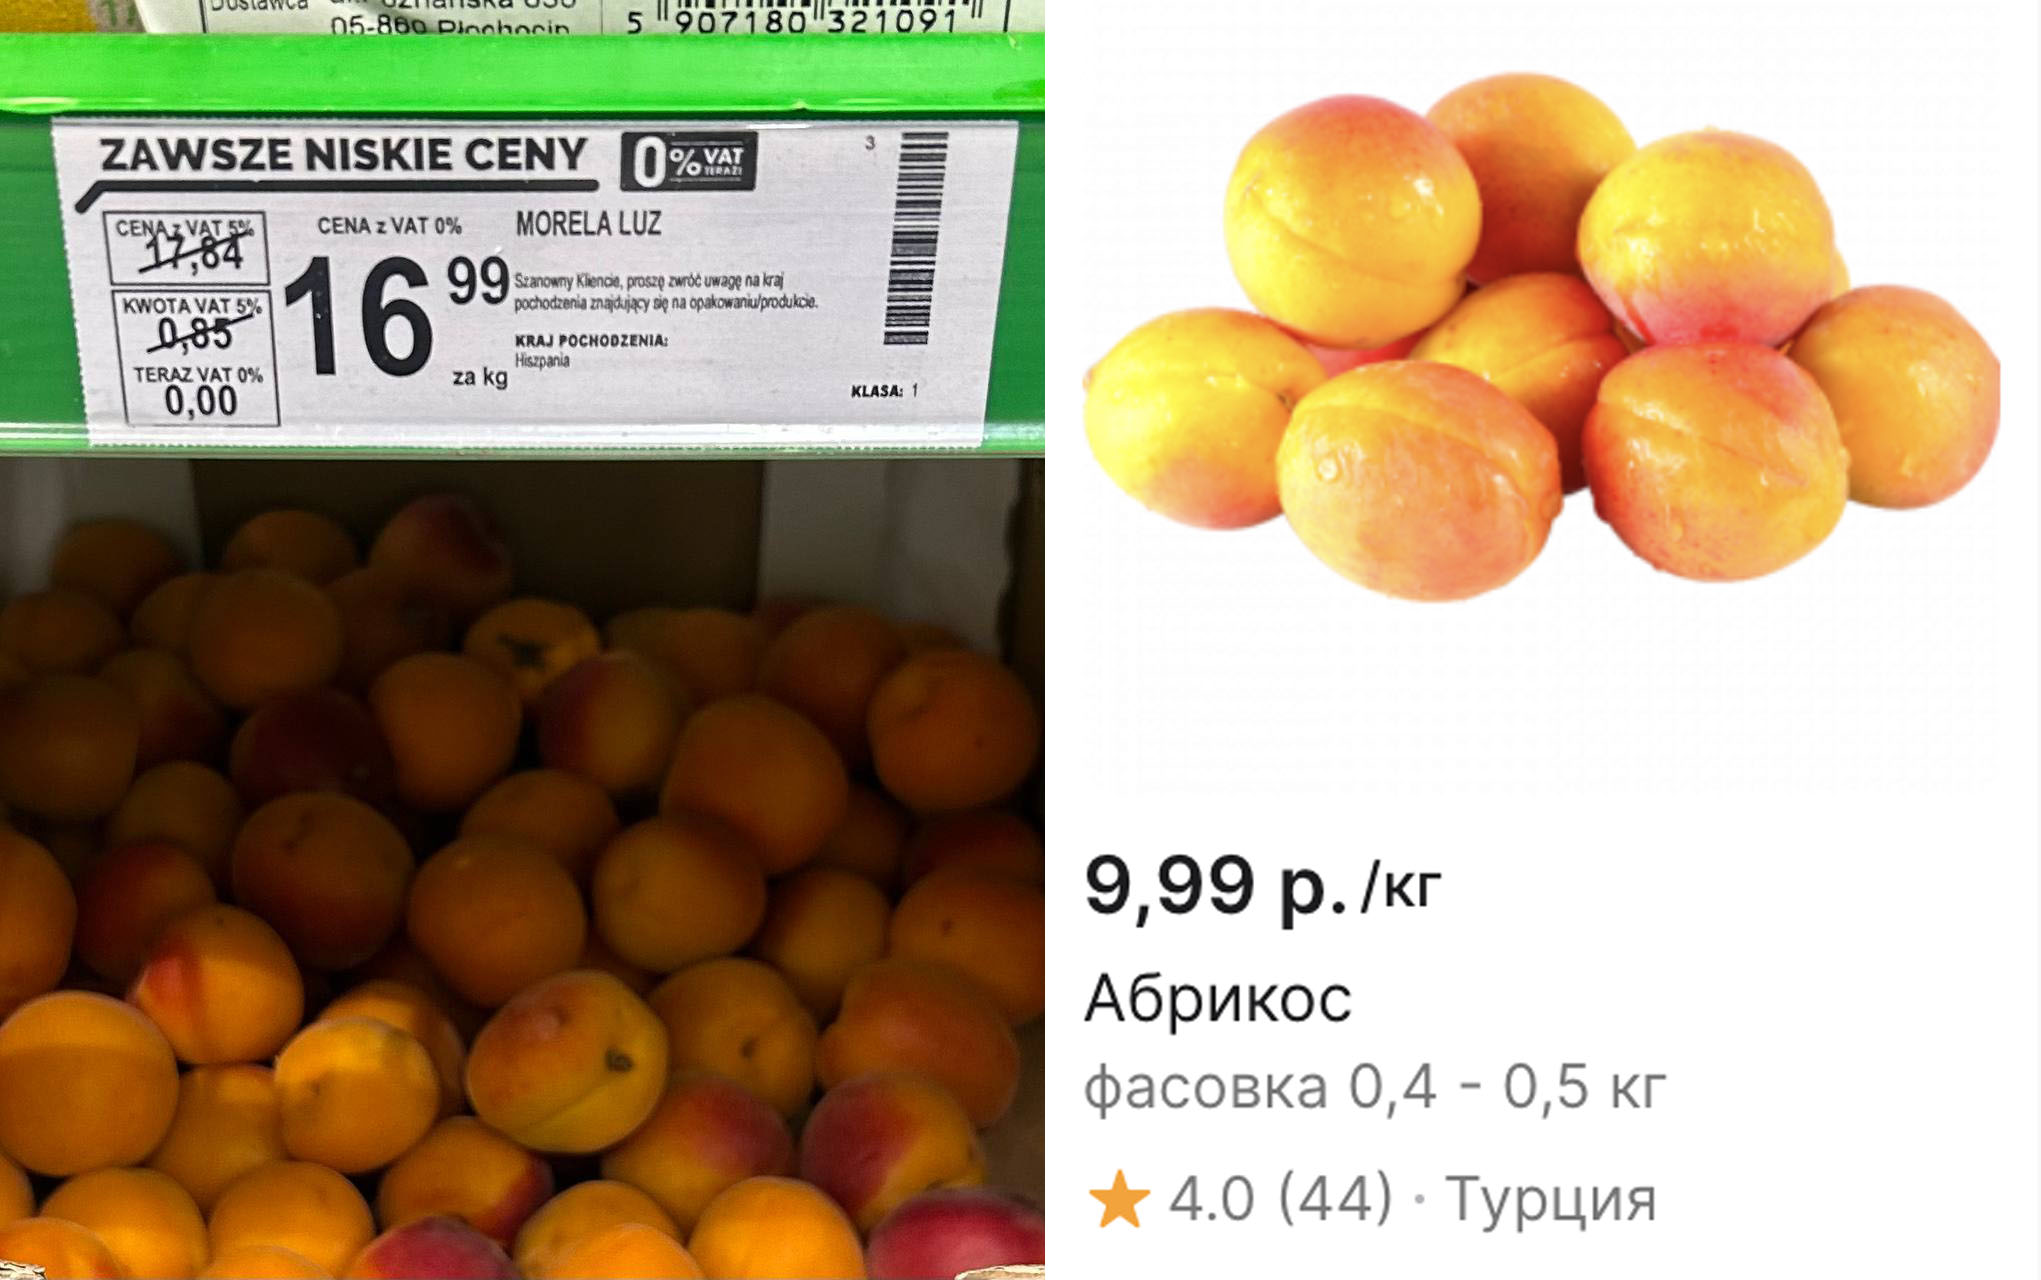 Сравнение цен на абрикосы в польском магазине Biedronka и на беларуском сайте «Е-доставка»